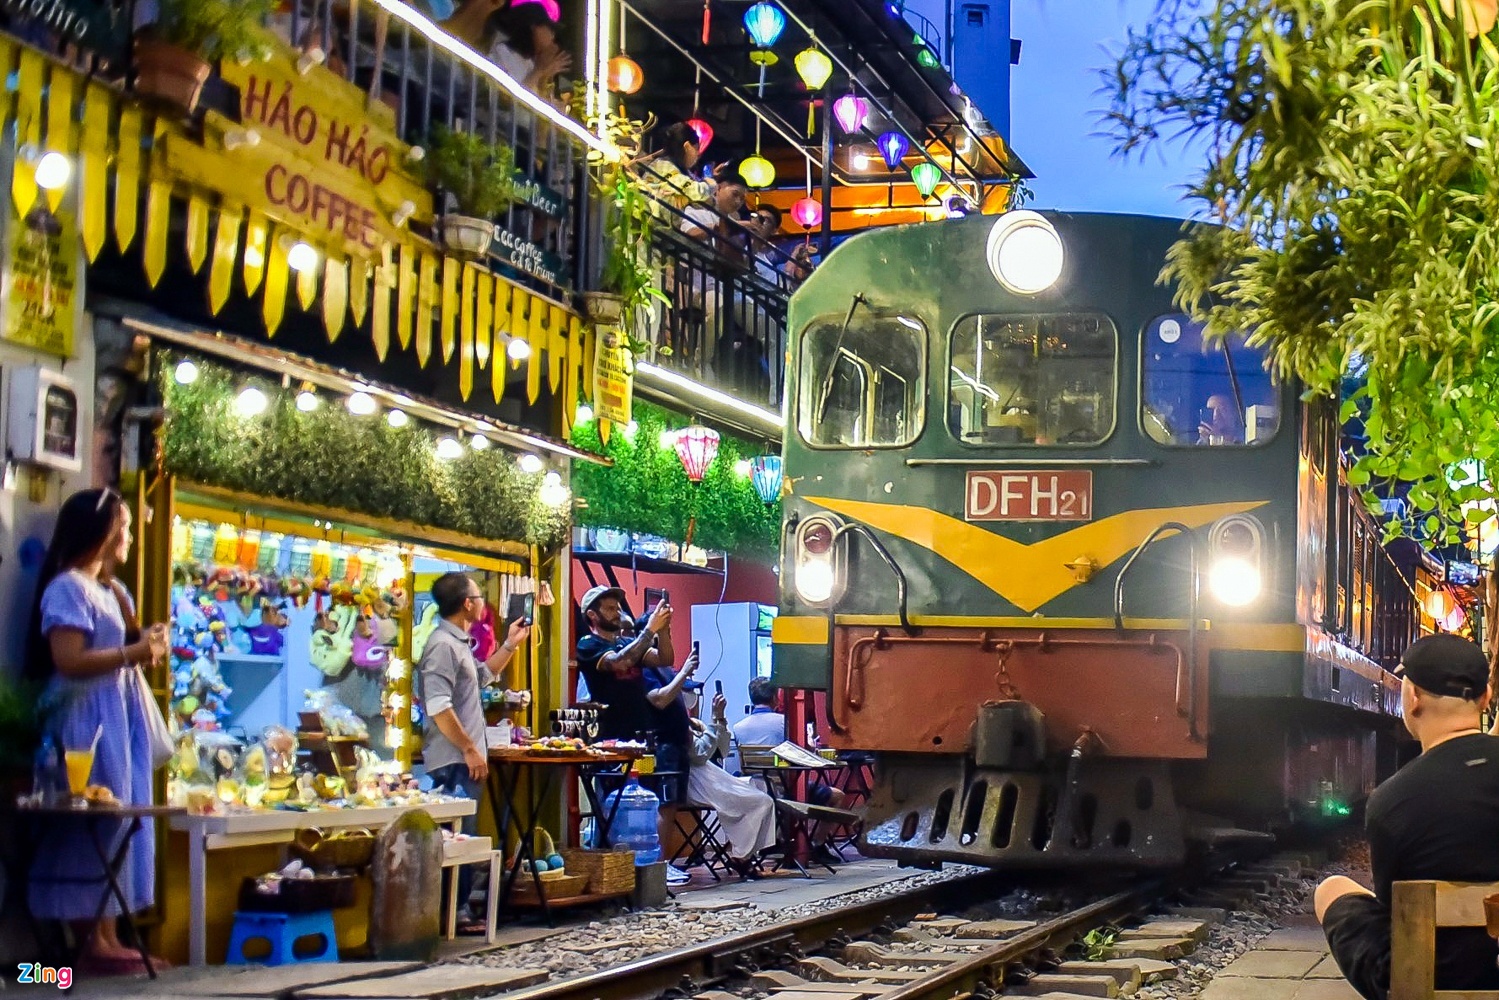 Hanoi railway coffee